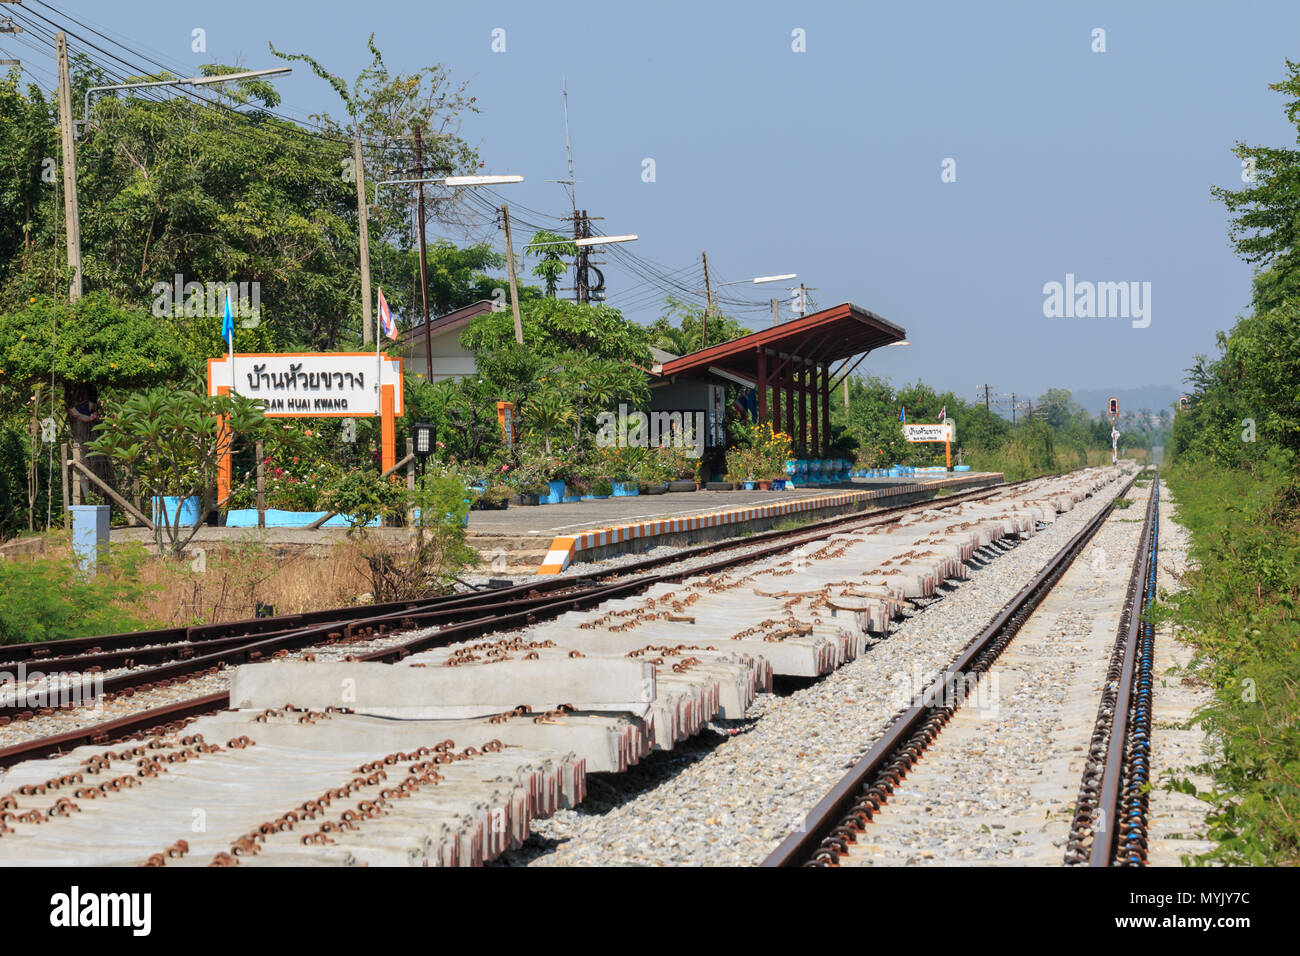 CHONBURI, Tailandia - 20 de noviembre : BAN Huai Kwang estación de tren en Chonburi, Tailandia .Chonburi está lejos de Bangkok, a unos 150 kilómetros .tomada en N Foto de stock